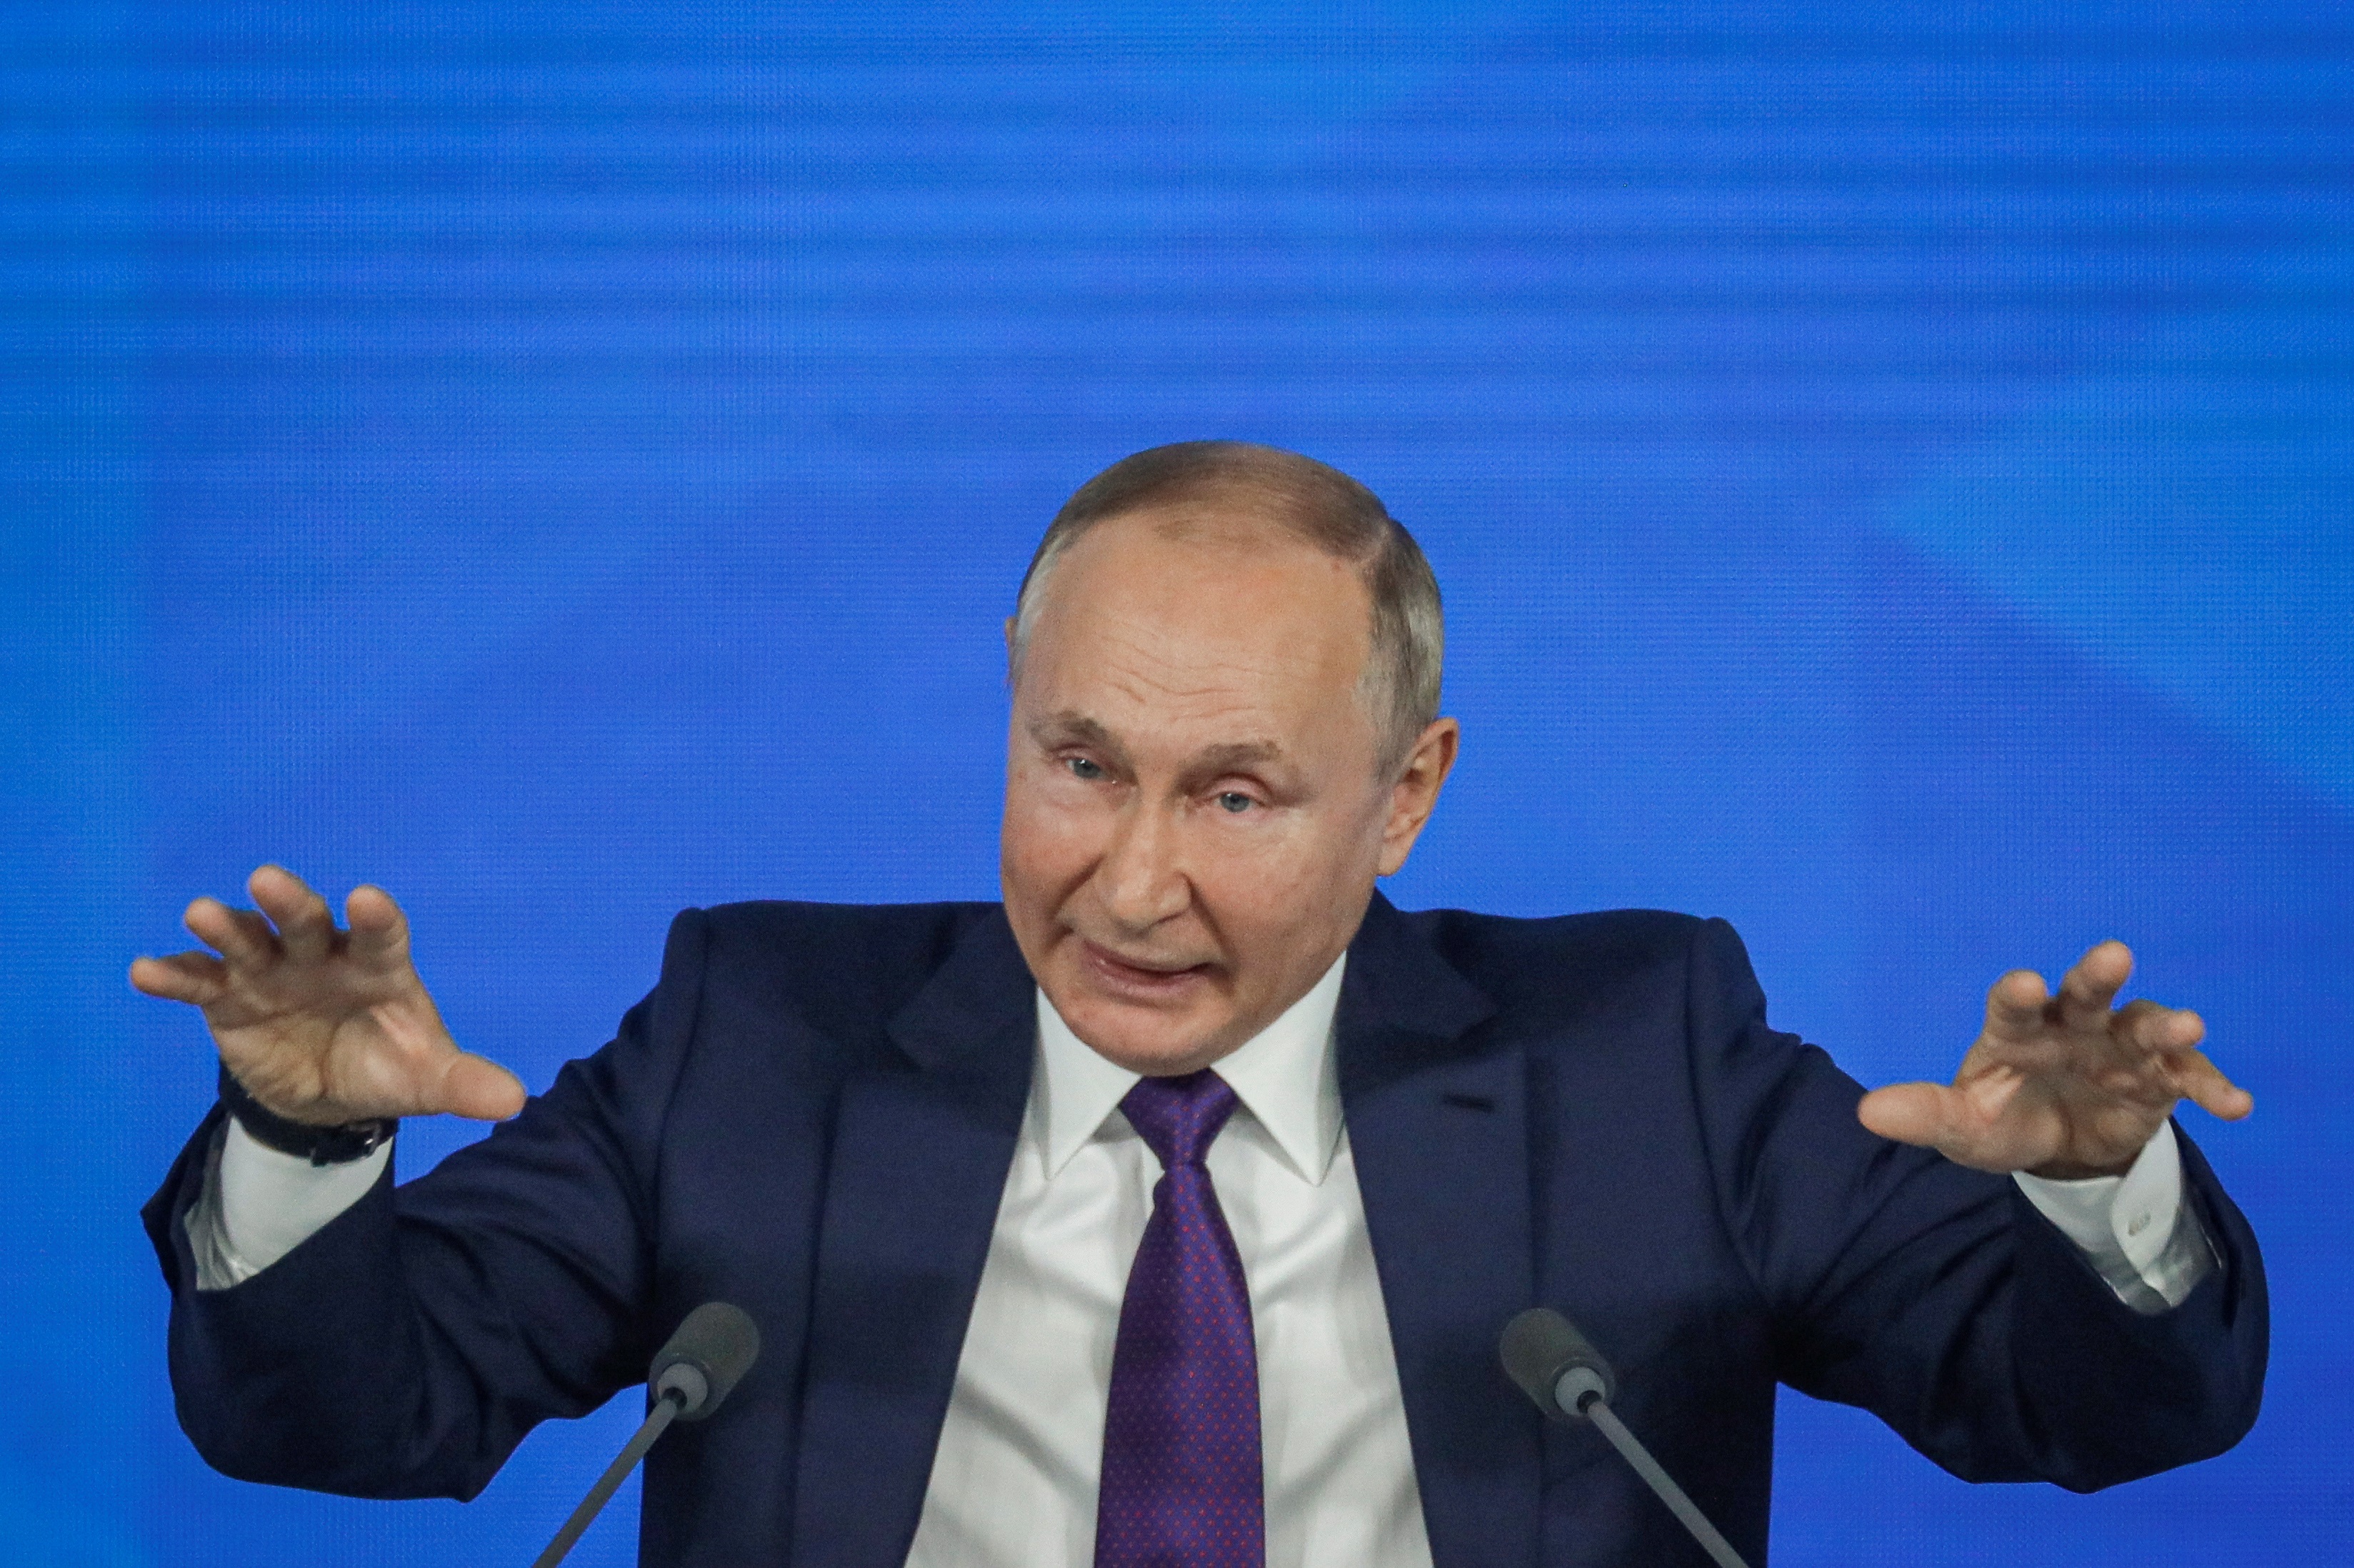 El presidente ruso, Vladimir Putin, durante su conferencia de prensa anual, ofrecida este jueves en Moscú. EFE/EPA/YURI KOCHETKOV
